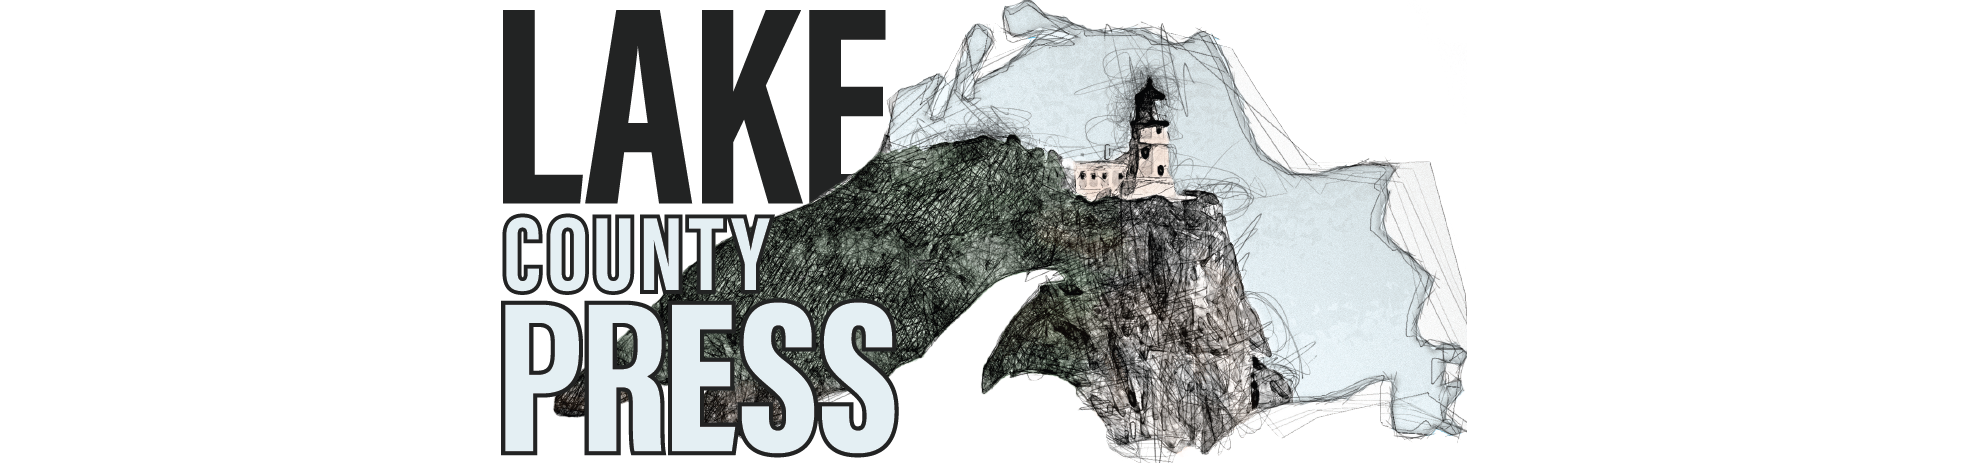 Lake County Press